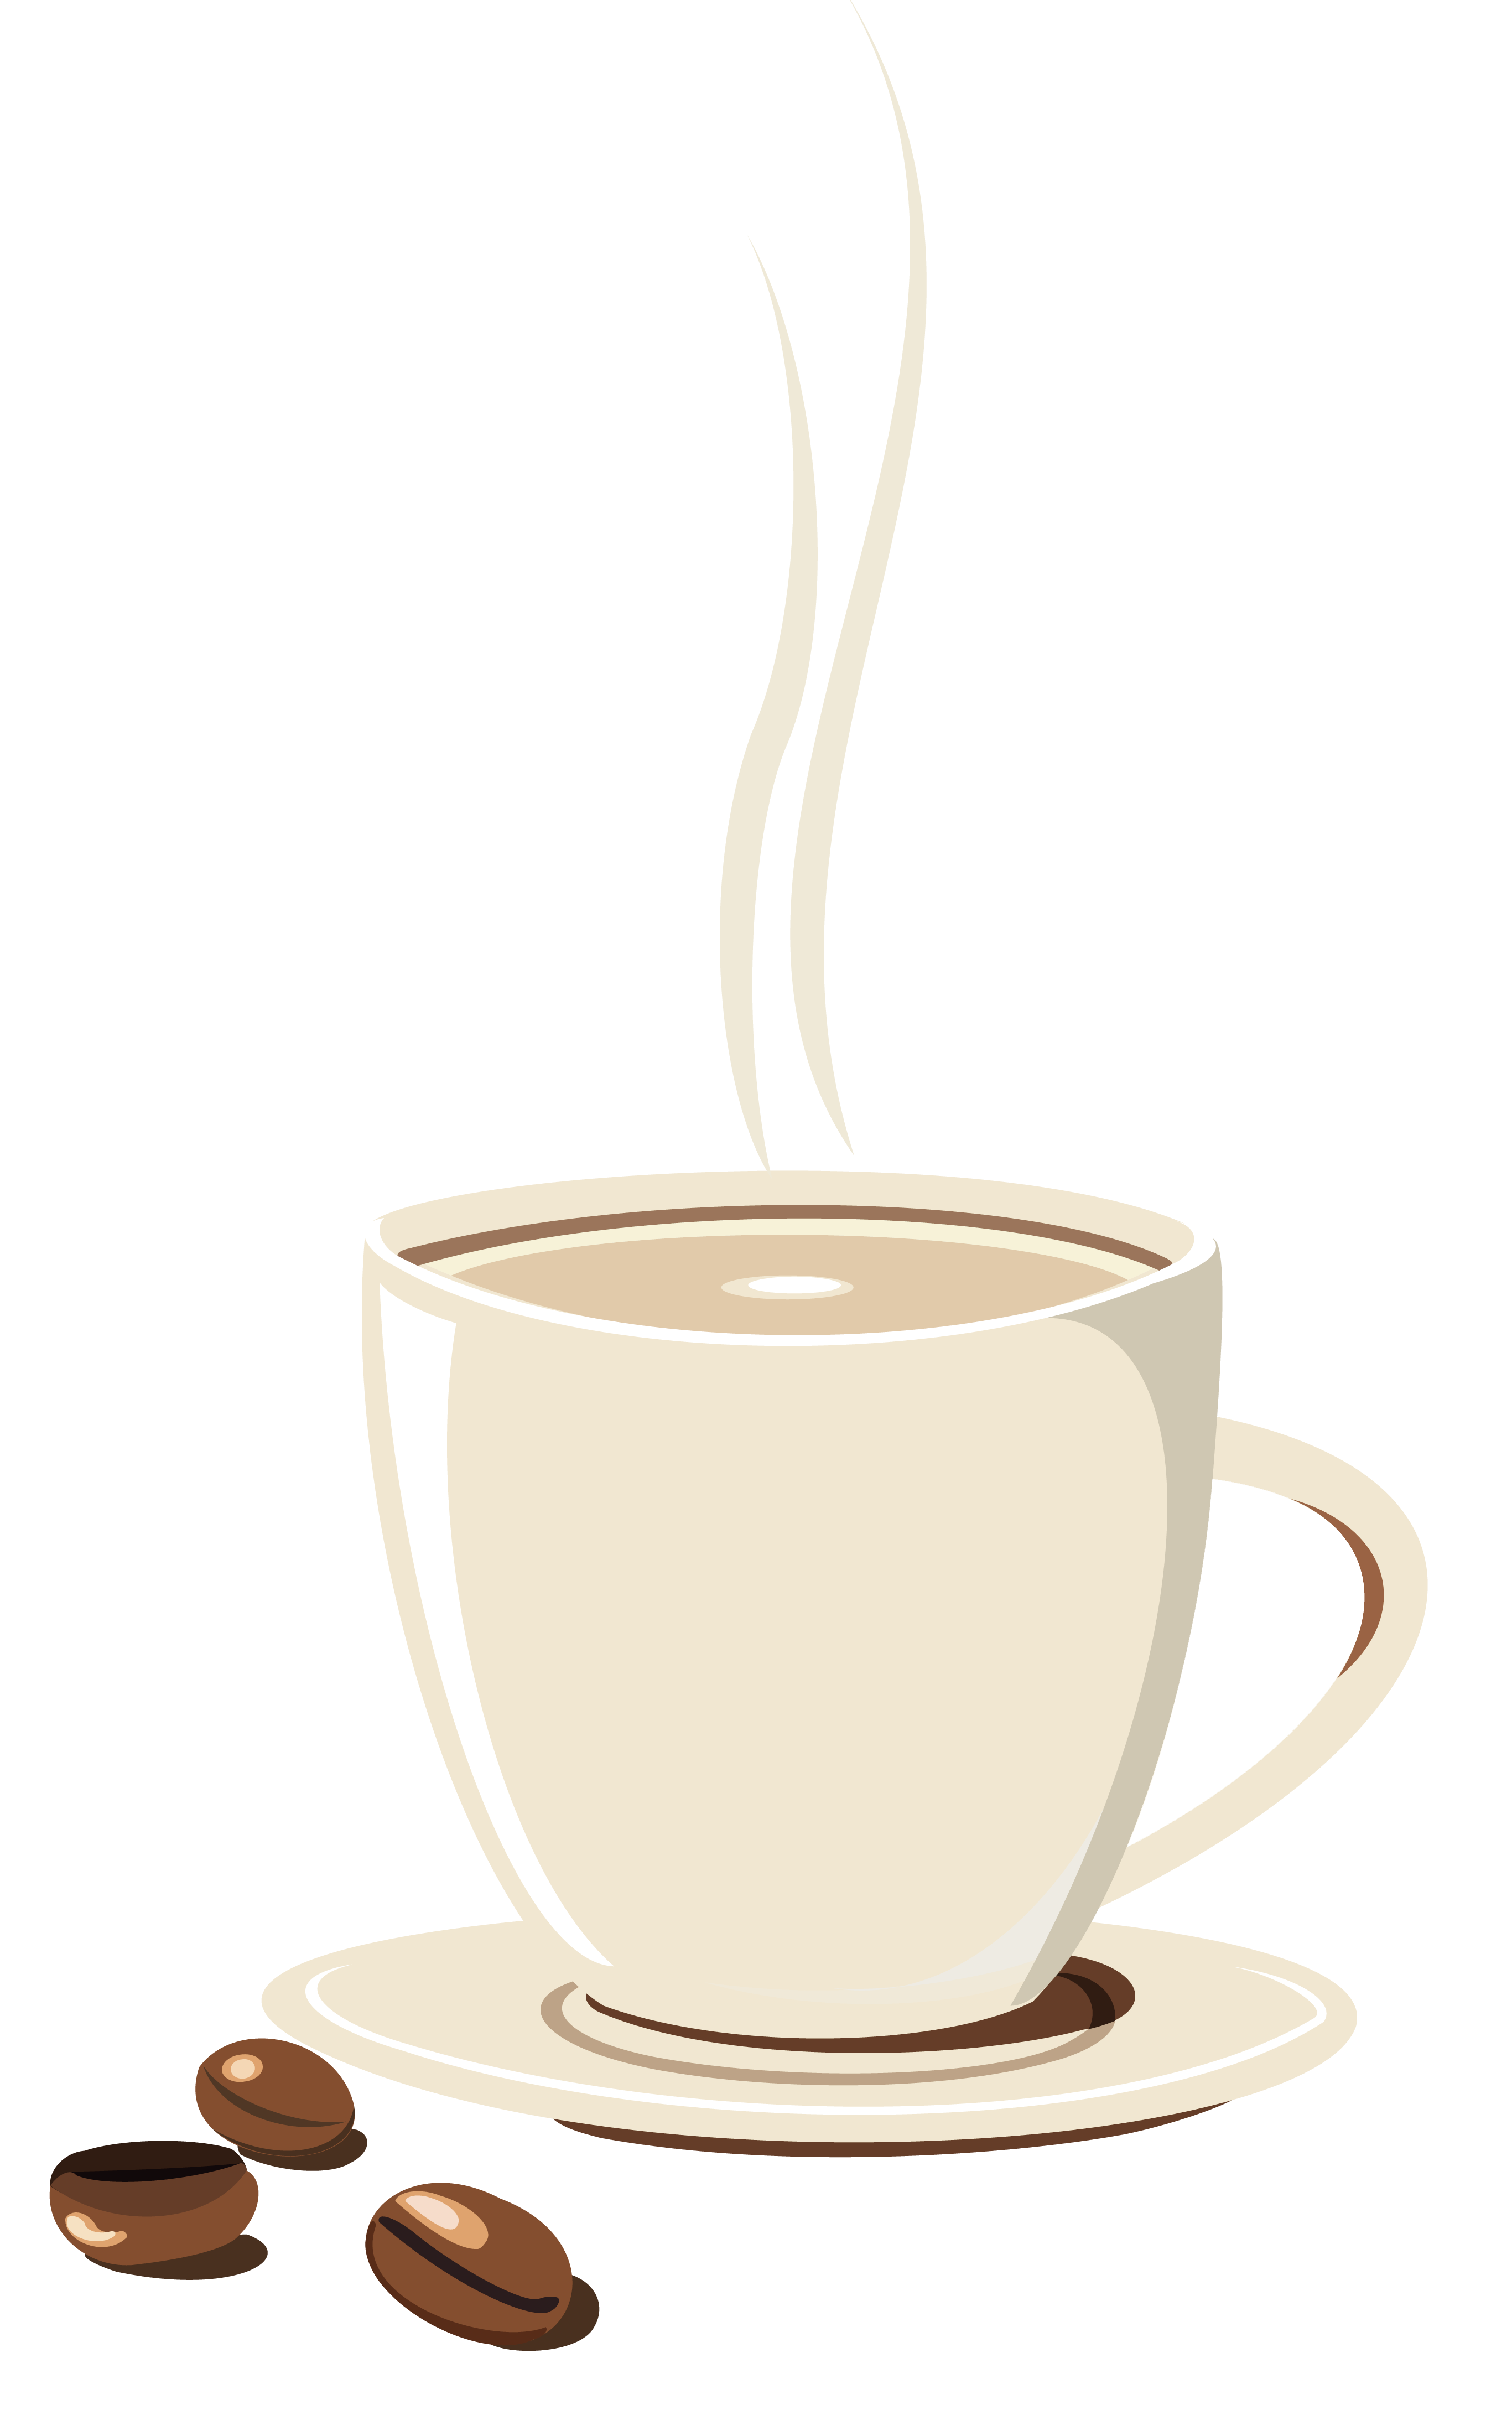 Picture Single-Origin Cup Tea Espresso Coffee Cafe PNG Image